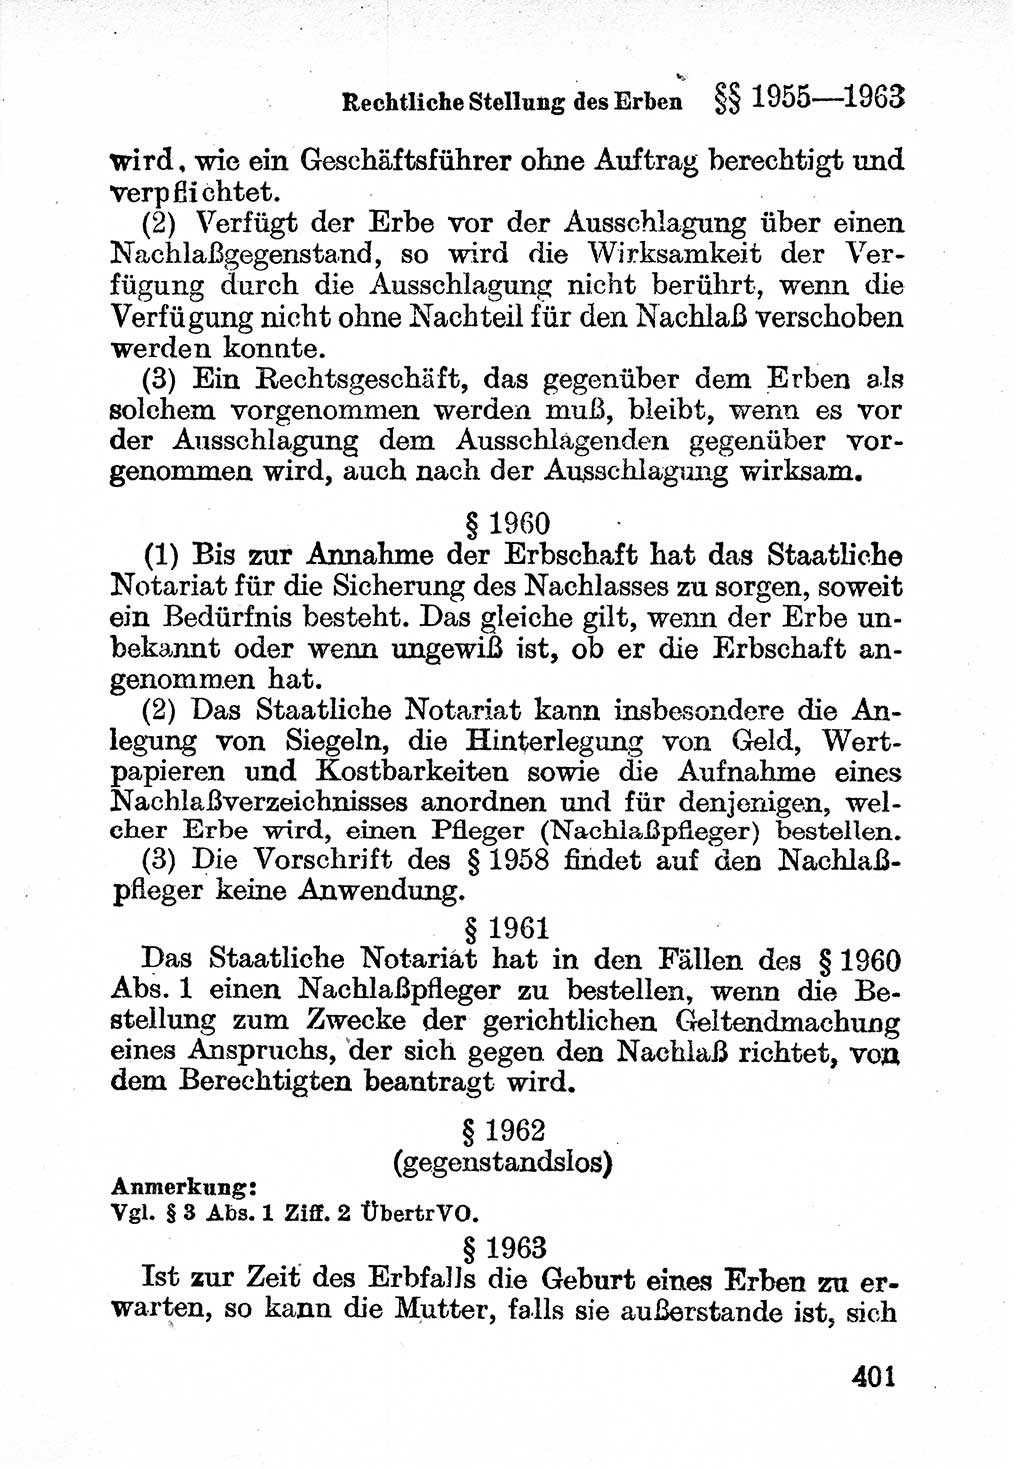 Bürgerliches Gesetzbuch (BGB) nebst wichtigen Nebengesetzen [Deutsche Demokratische Republik (DDR)] 1956, Seite 401 (BGB Nebenges. DDR 1956, S. 401)